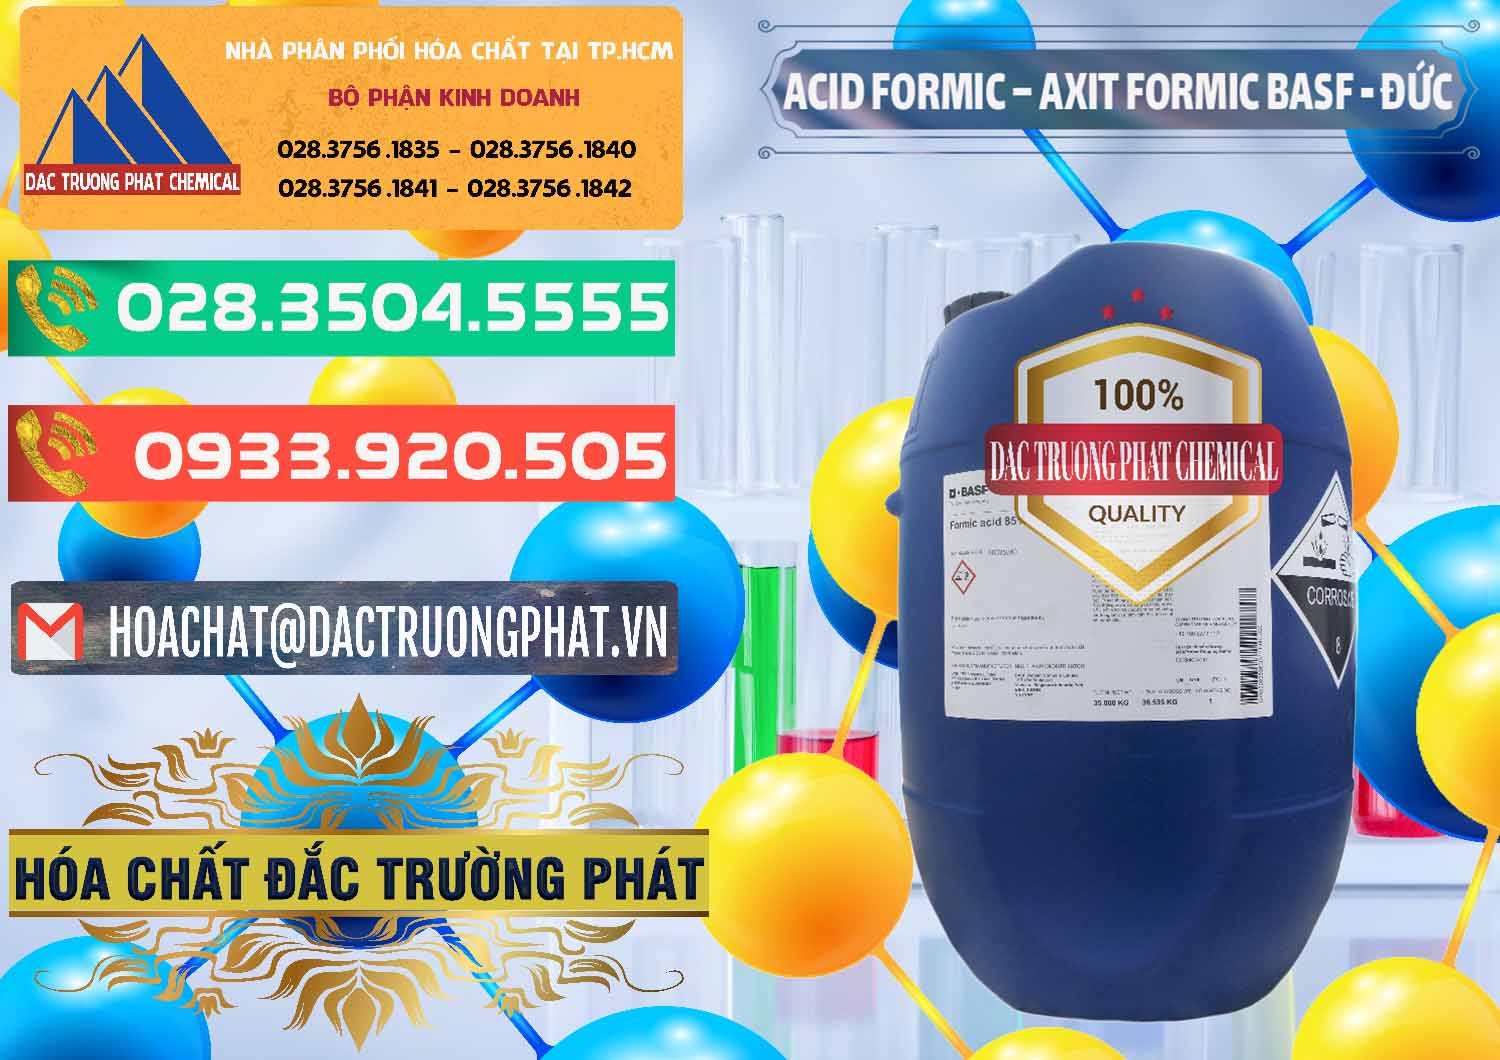 Công ty bán và phân phối Acid Formic - Axit Formic BASF Đức Germany - 0028 - Nhà cung ứng - phân phối hóa chất tại TP.HCM - congtyhoachat.com.vn